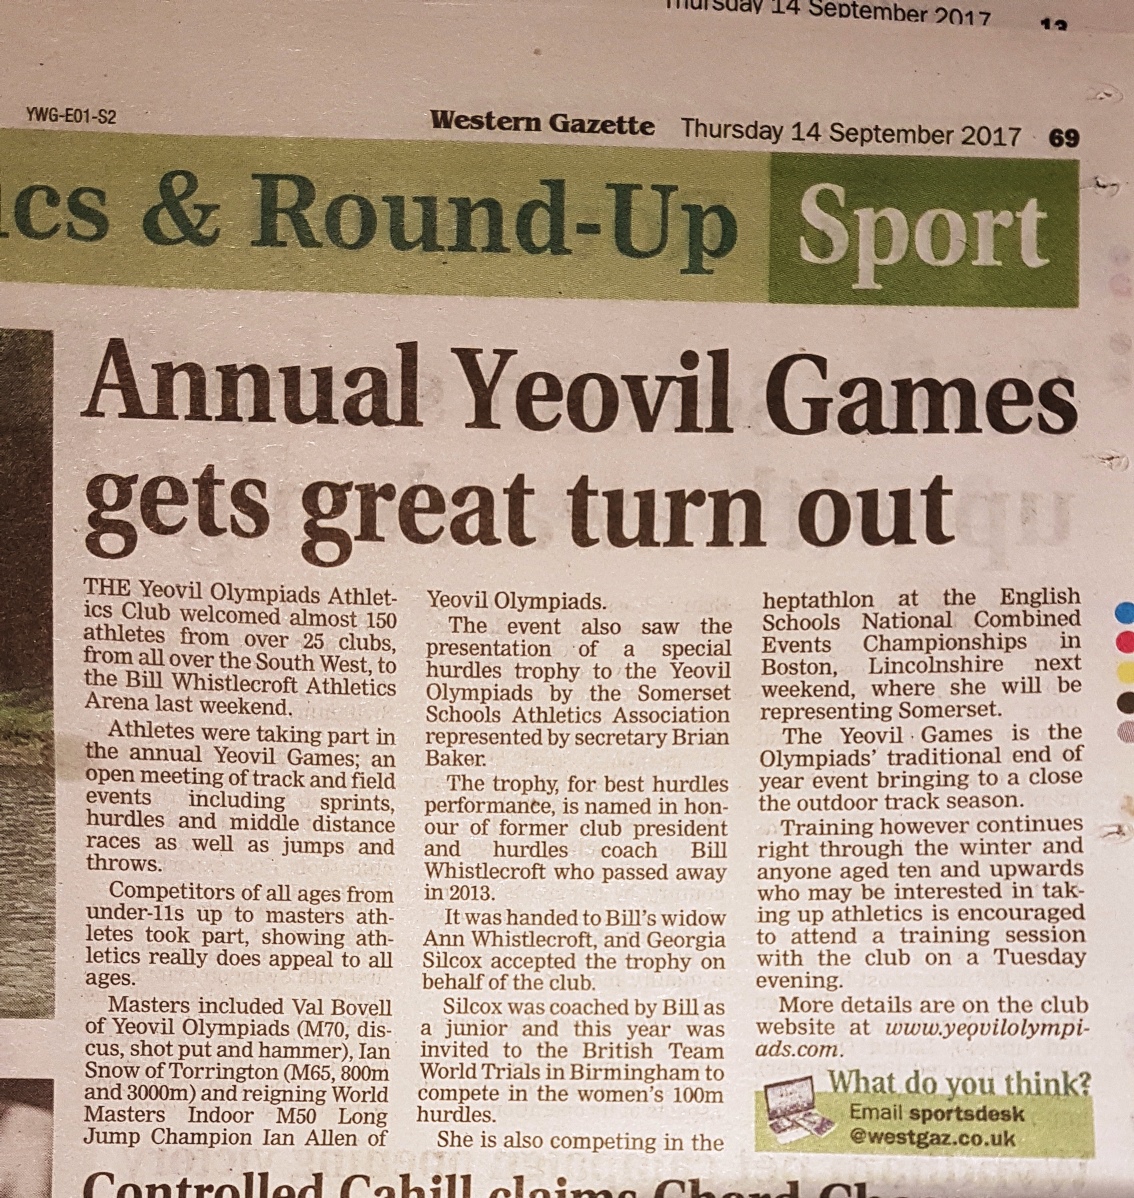 Yeovil Games 2017